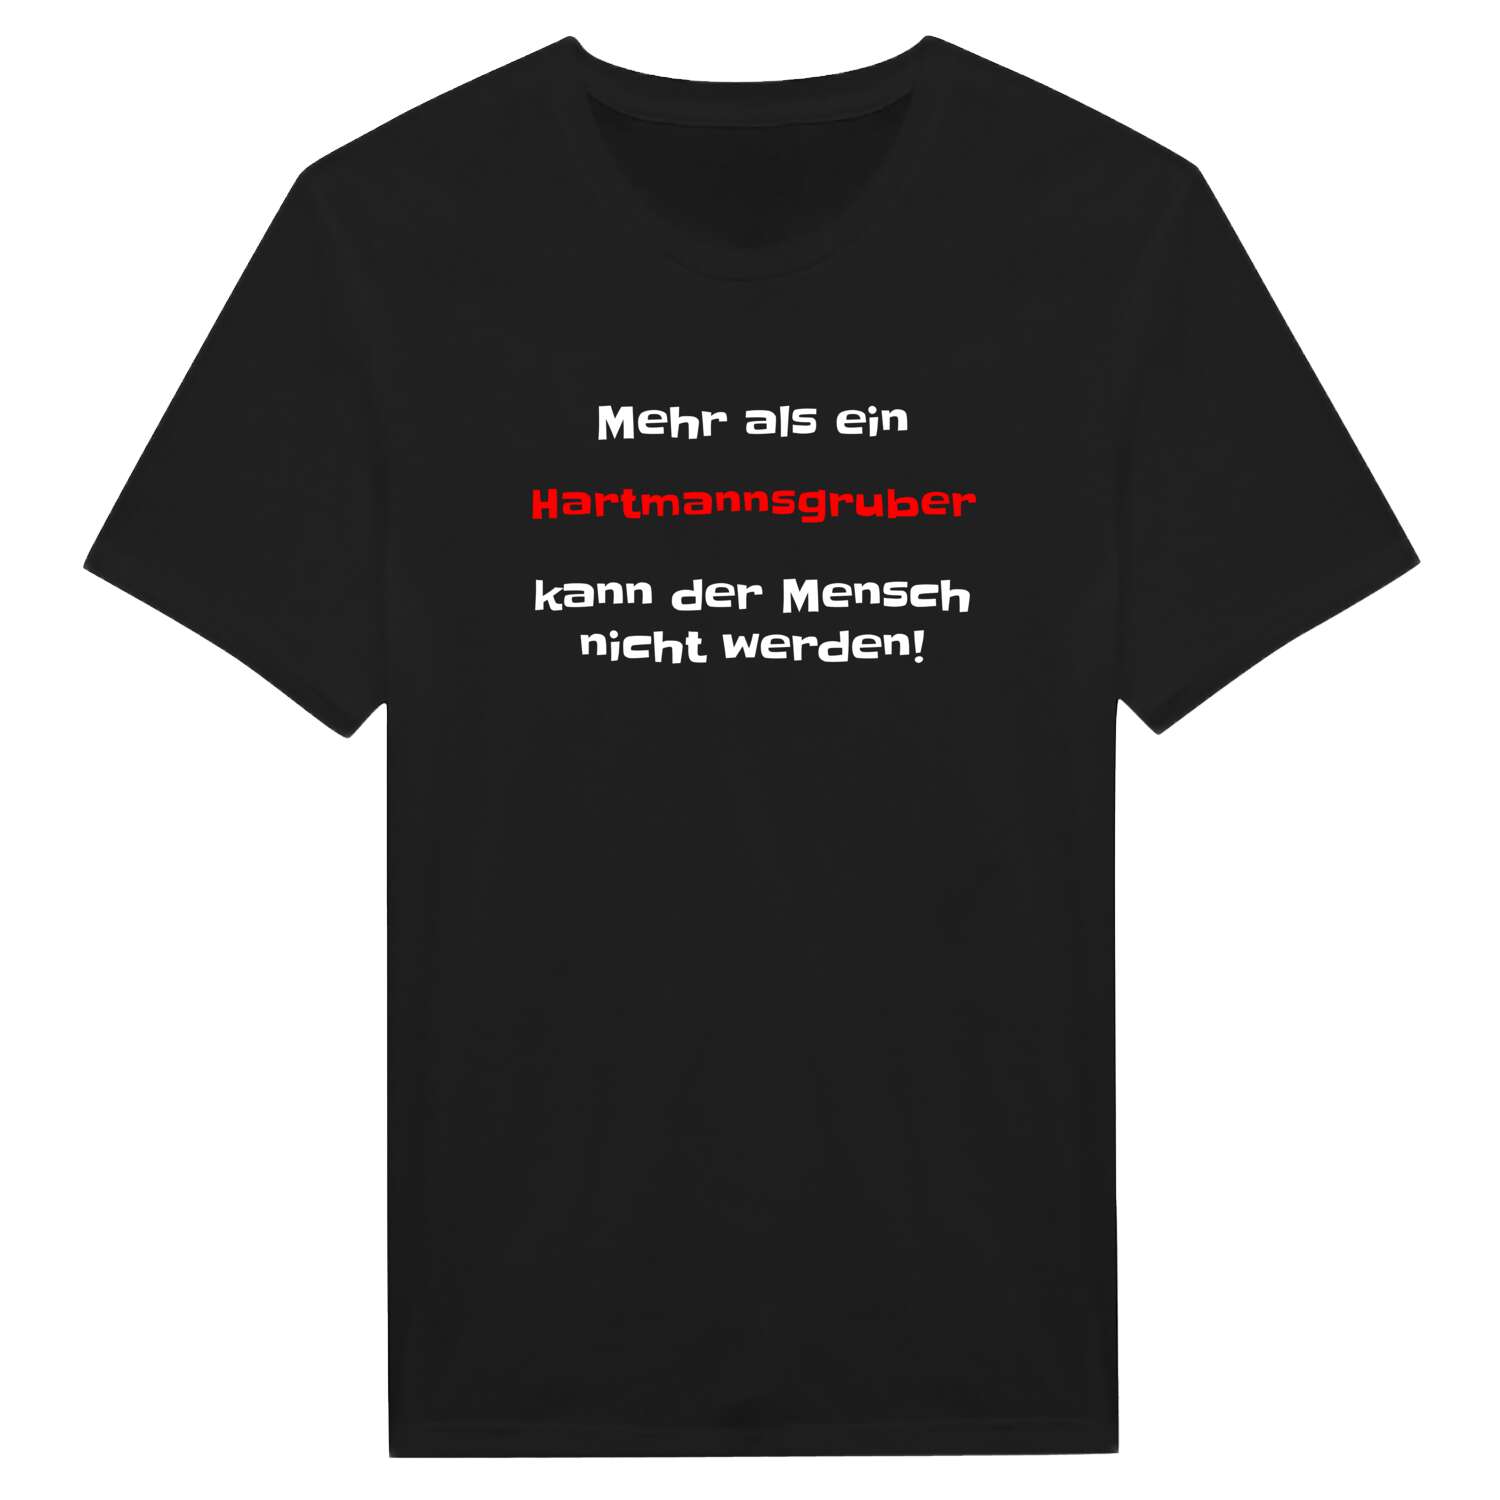 Hartmannsgrub T-Shirt »Mehr als ein«